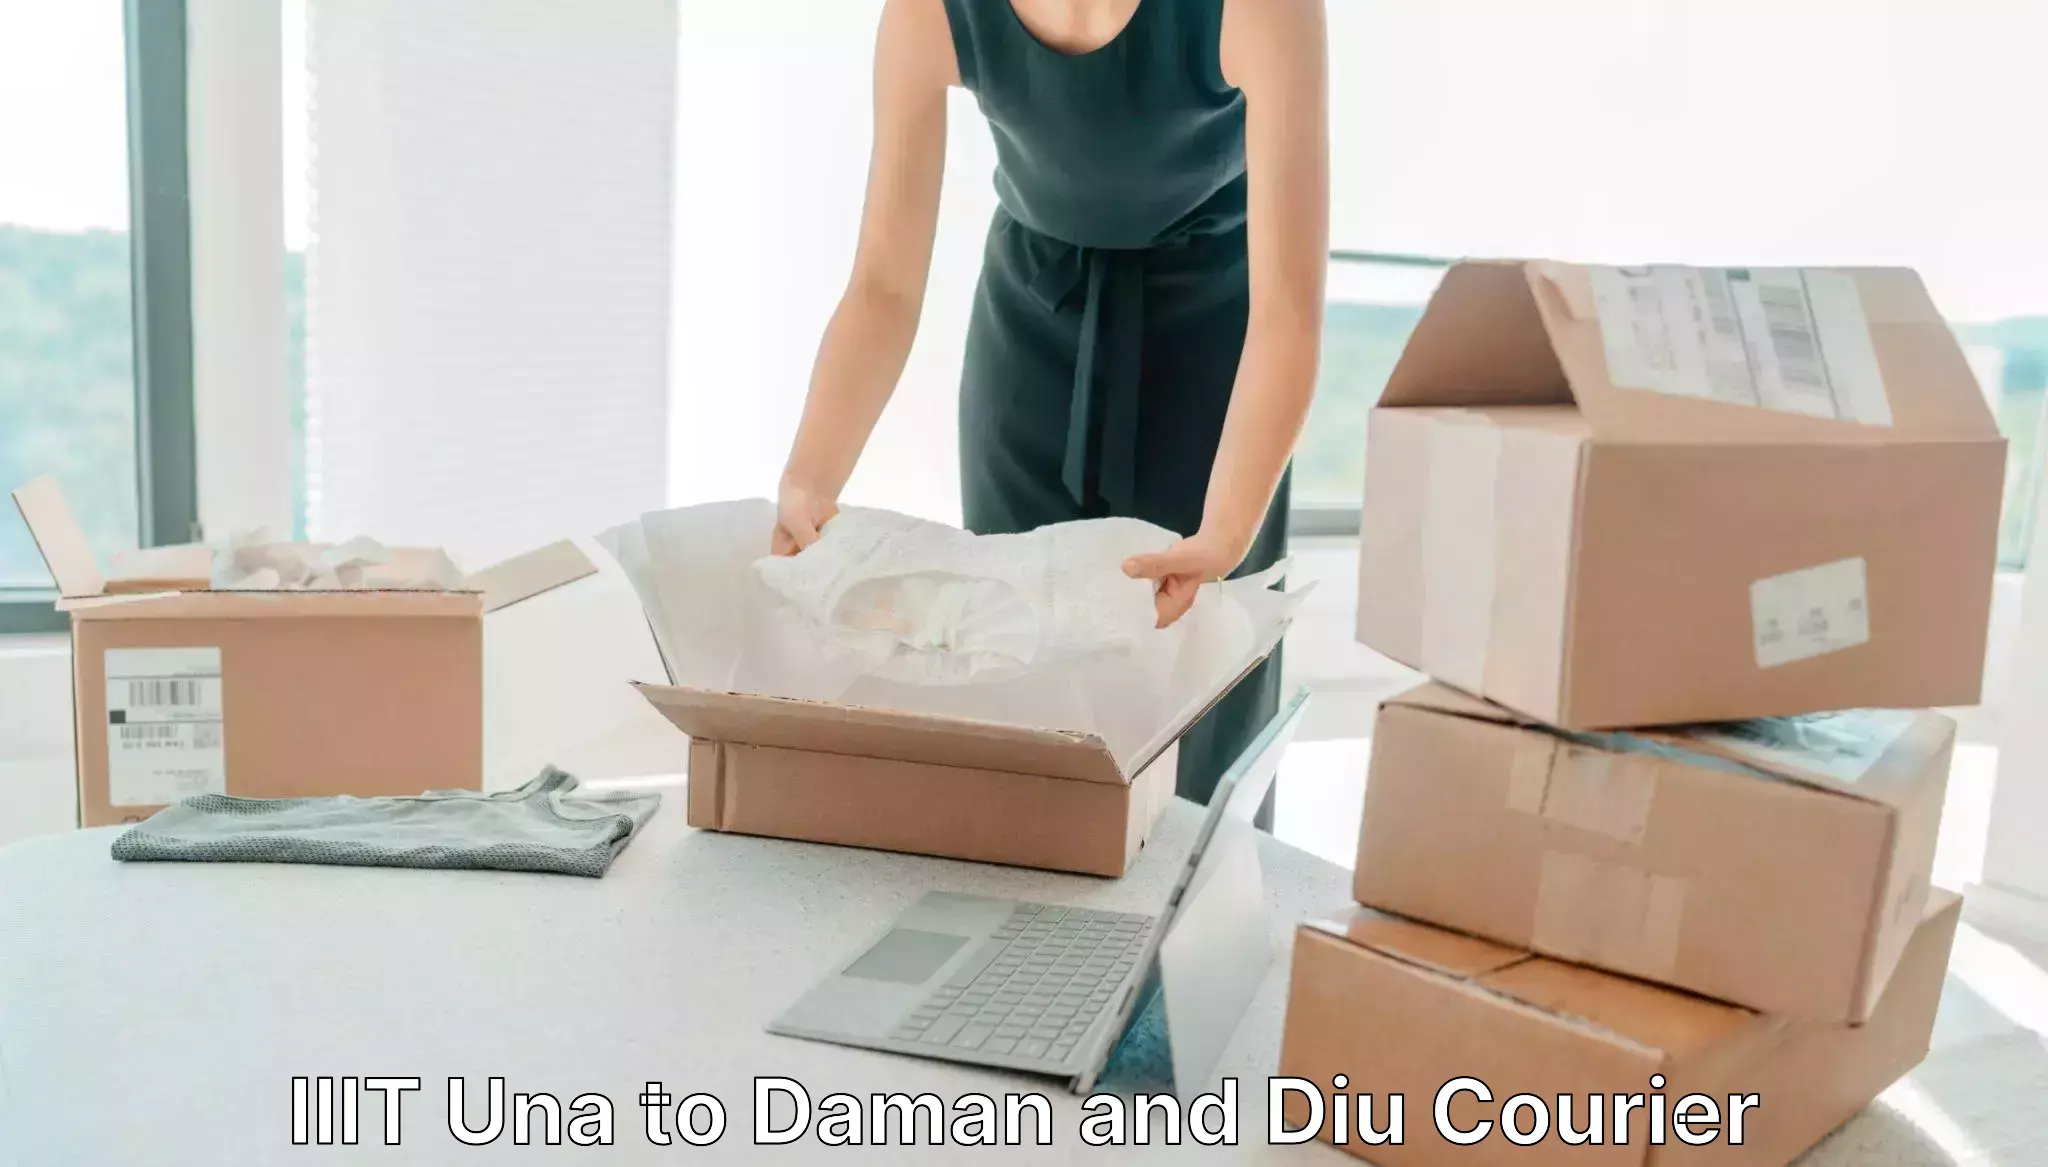 Digital courier platforms in IIIT Una to Daman